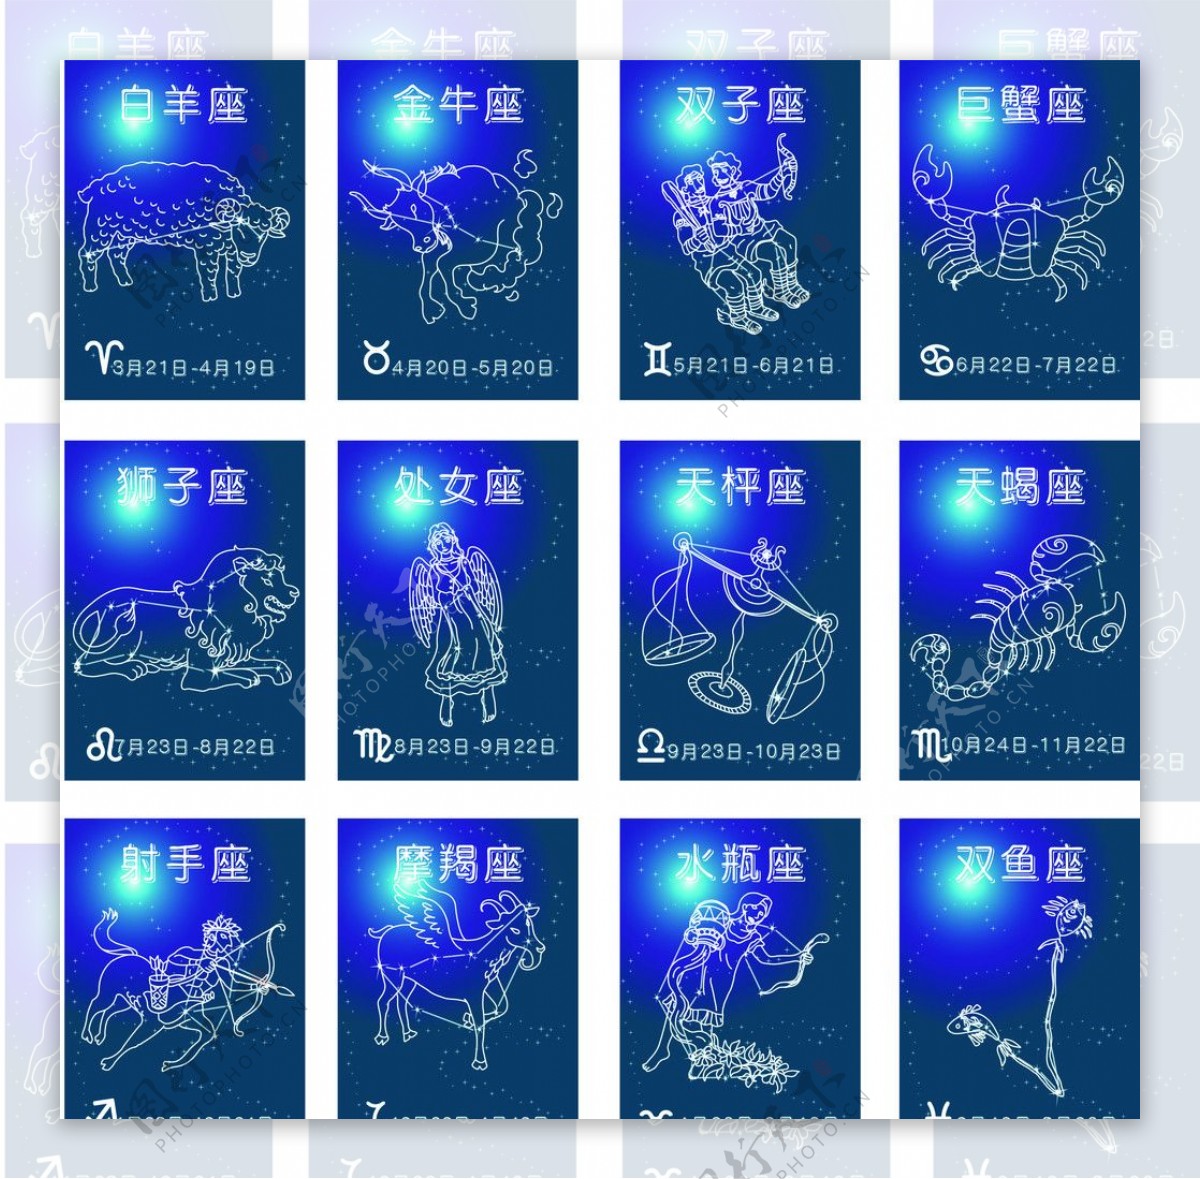 权威全天88星座图认星工具恒星分布图天文学习教学科普教具- 天文文创- 北京天文馆